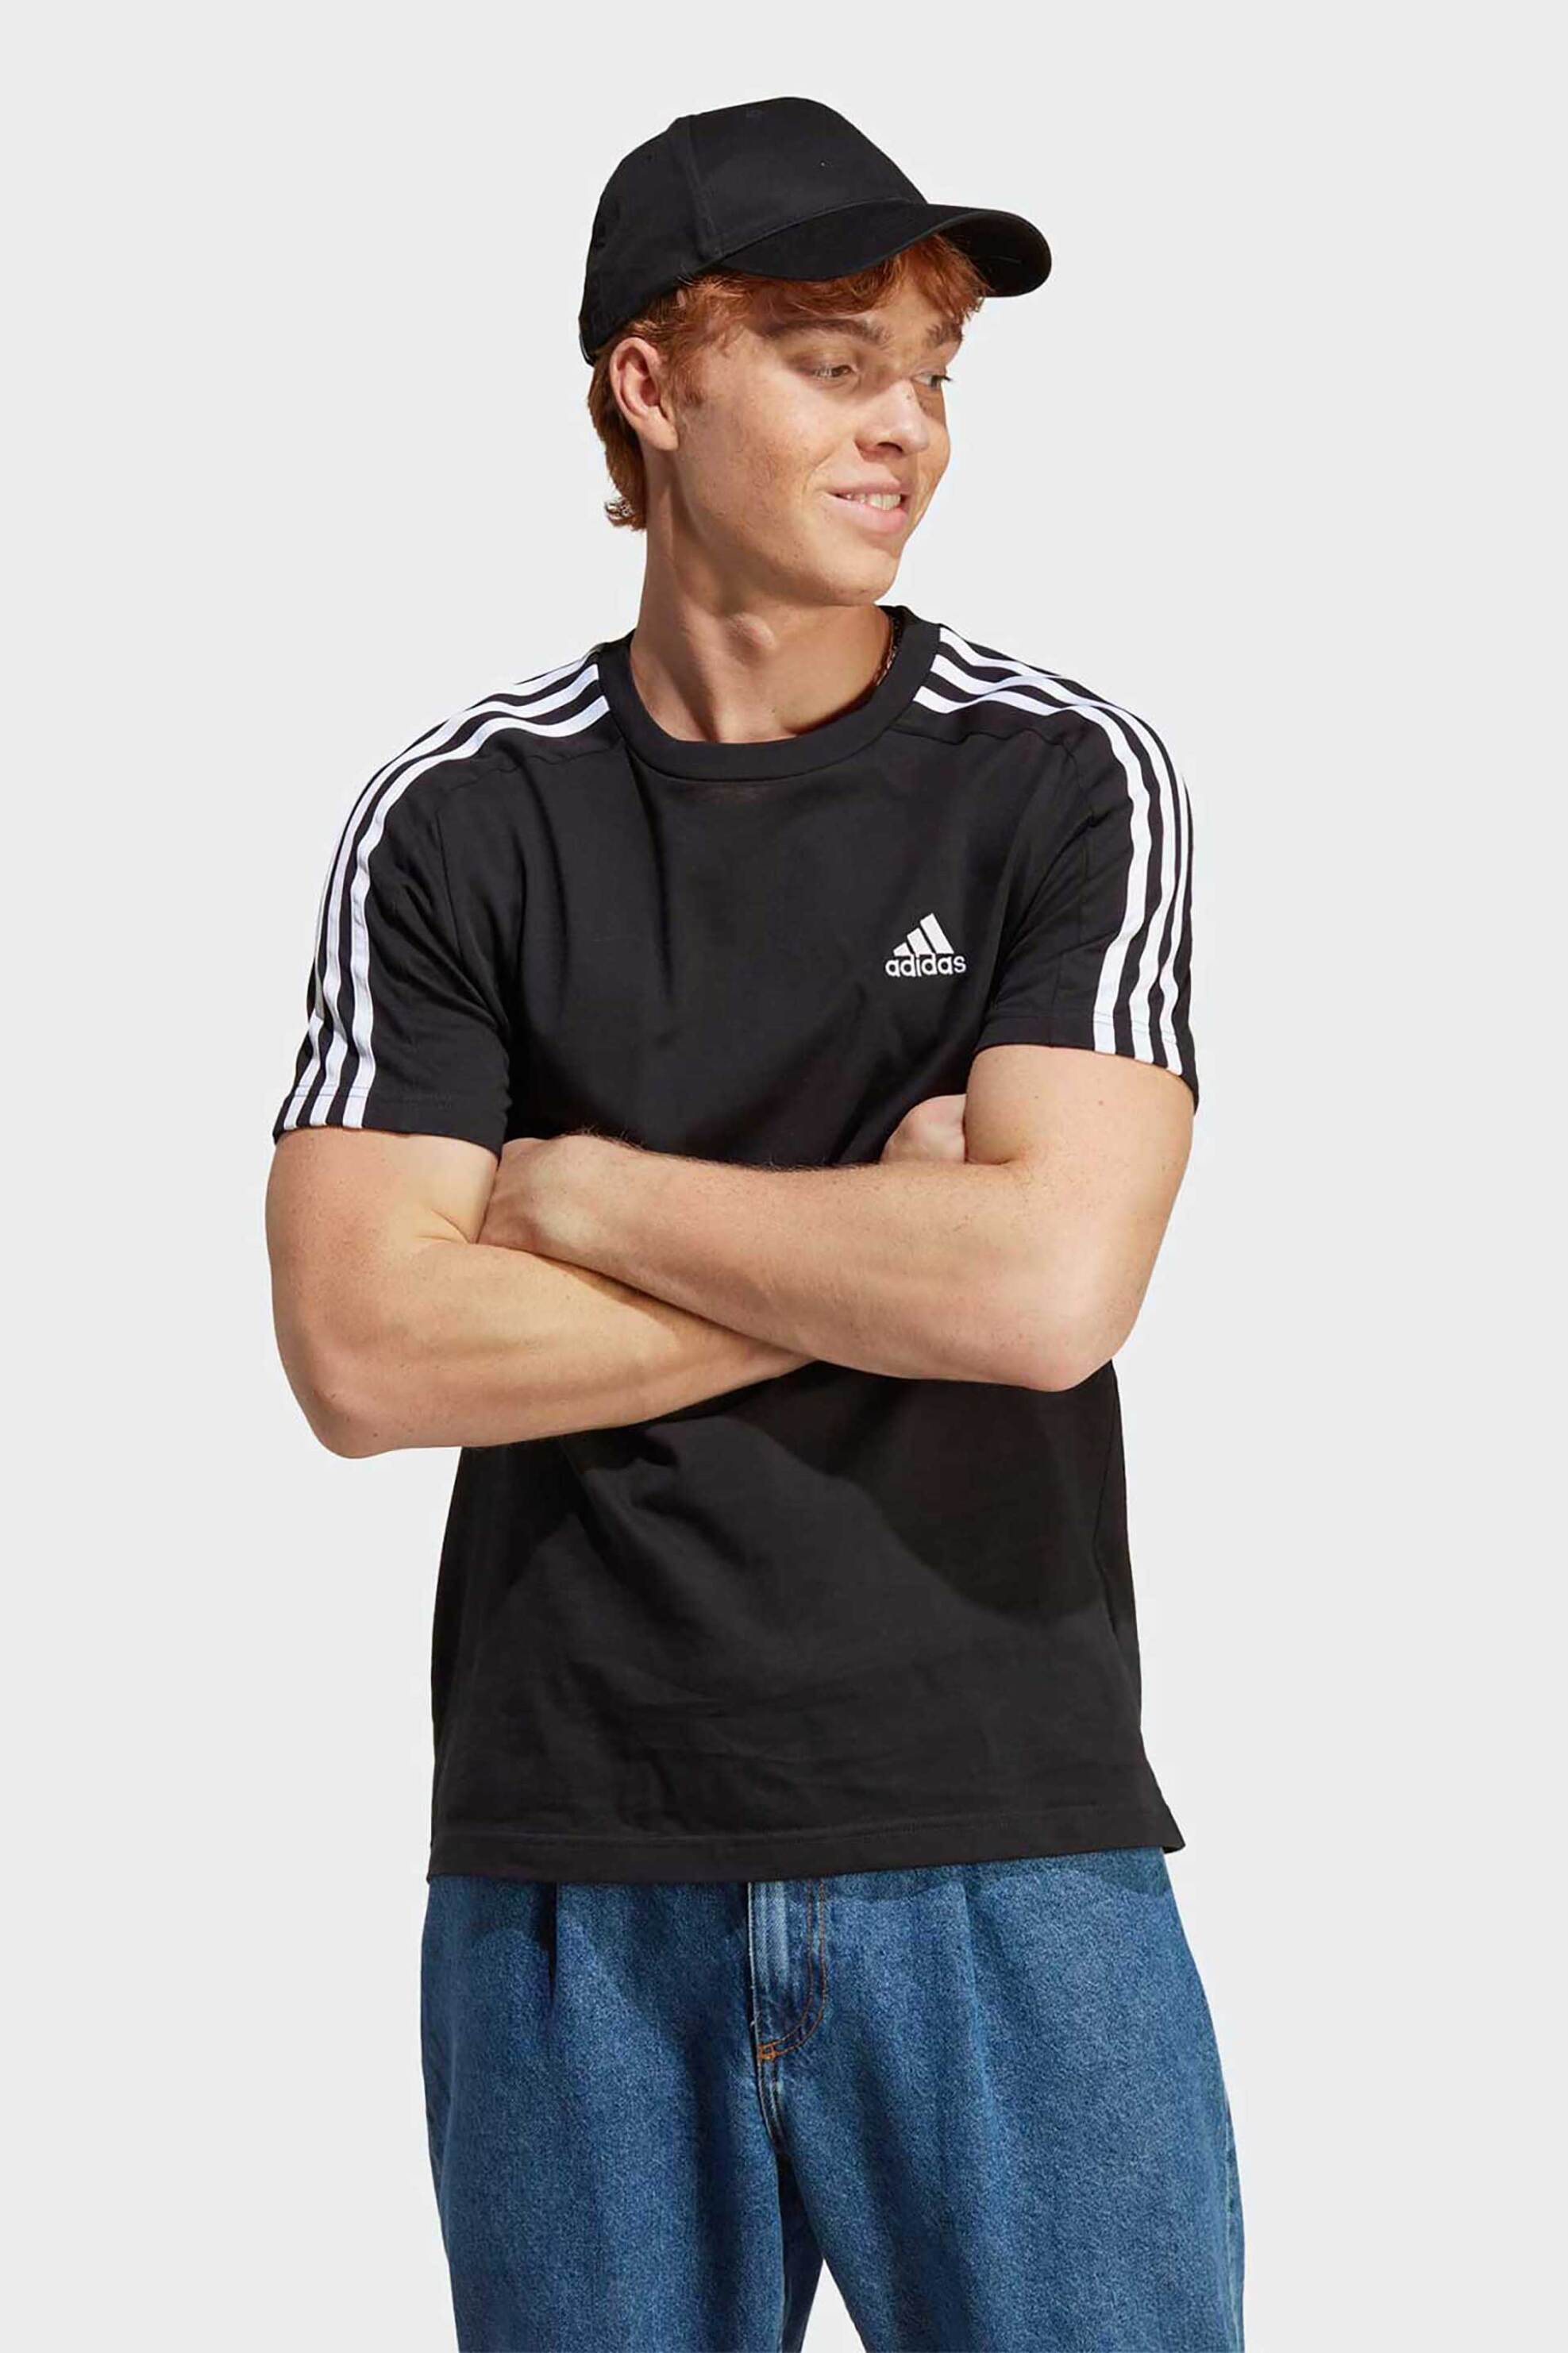 Ανδρική Μόδα > Ανδρικά Αθλητικά > Ανδρικά Αθλητικά Ρούχα > Αθλητικές Μπλούζες > Ανδρικά Αθλητικά T-Shirts Adidas ανδρικό αθλητικό T-shirt μονόχρωμο με contrast λογότυπο και ρίγες στους ώμους "Essentials Single Jersey 3-stripes" - IC9334 Μαύρο